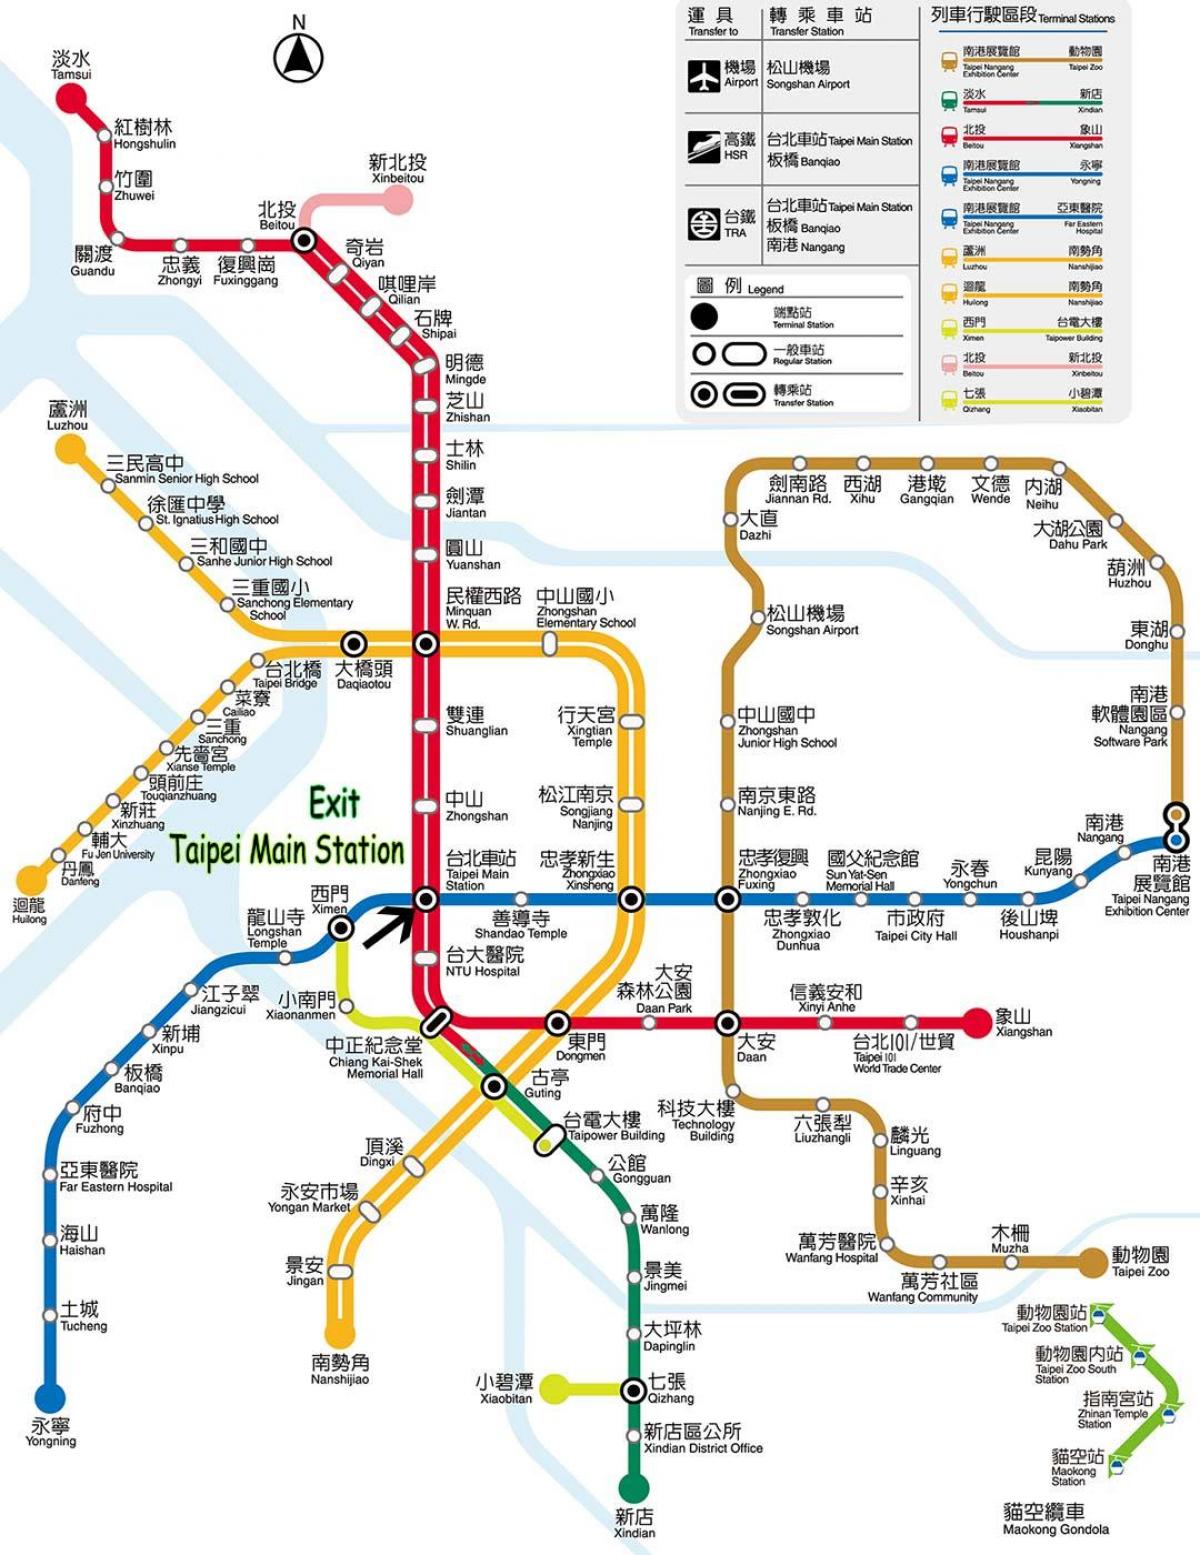 Taipei estasyon tren a prensipal la kat jeyografik